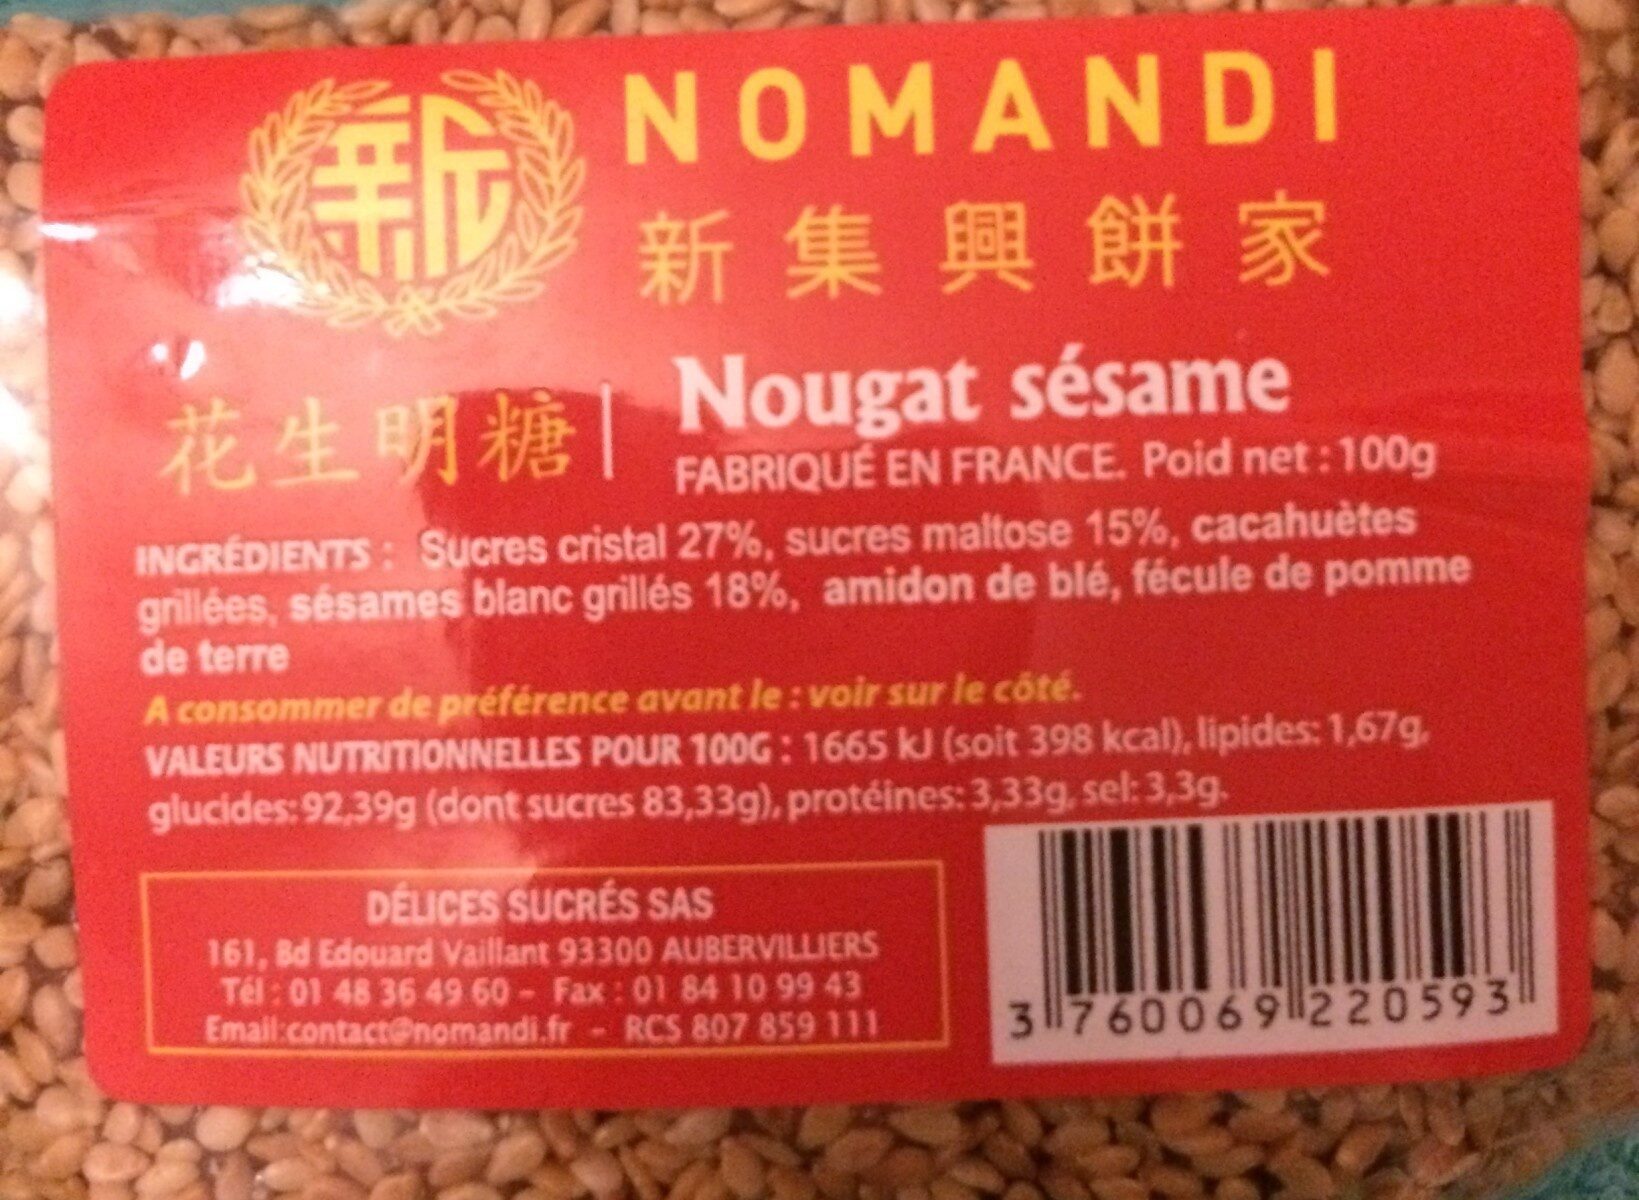 Nougat sesame - Product - fr